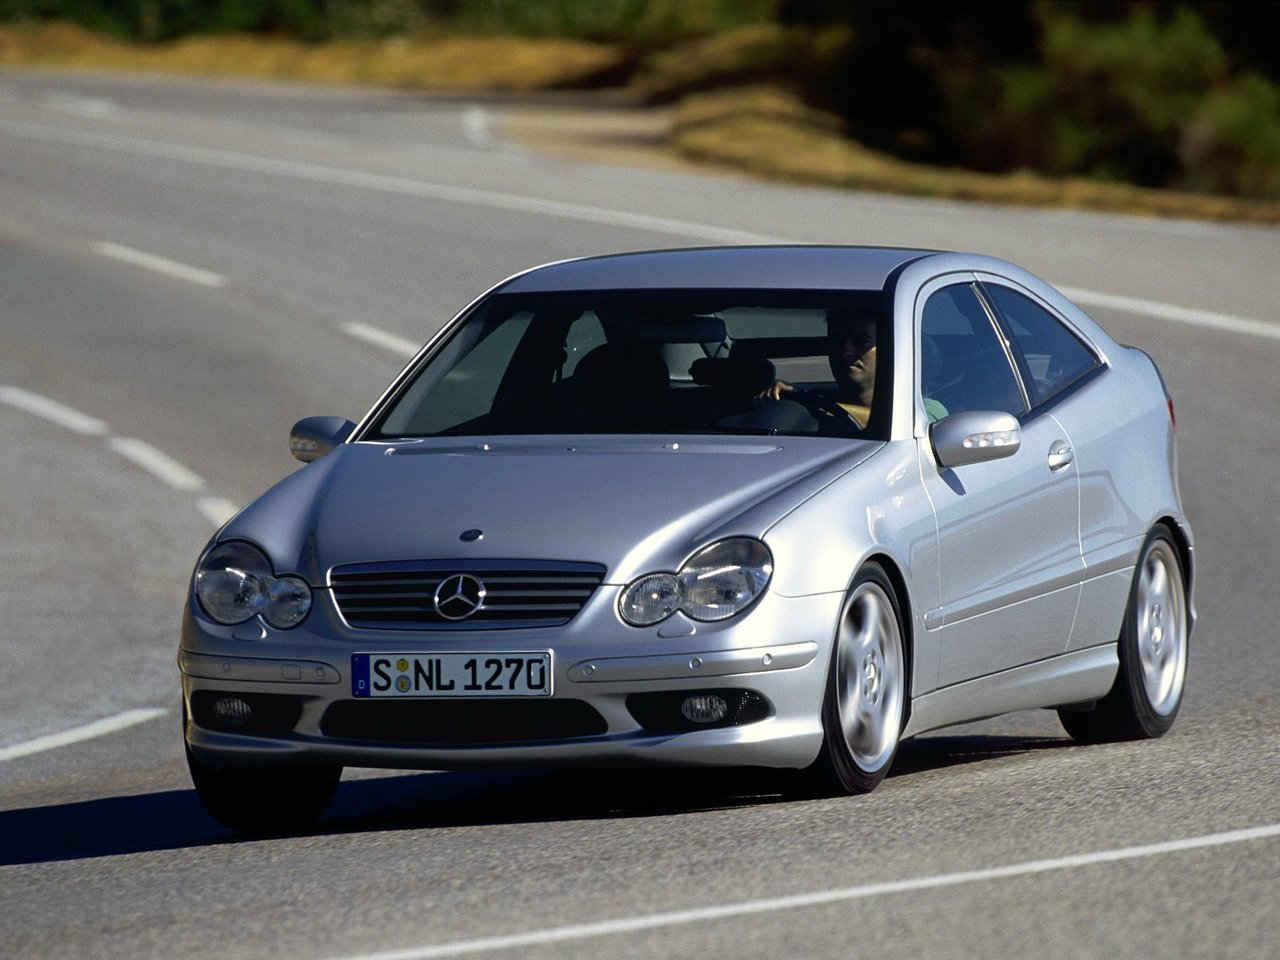 Расход газа одной комплектации хэтчбека три двери Mercedes-Benz C-klasse AMG. Разница стоимости заправки газом и бензином. Автономный пробег до и после установки ГБО.